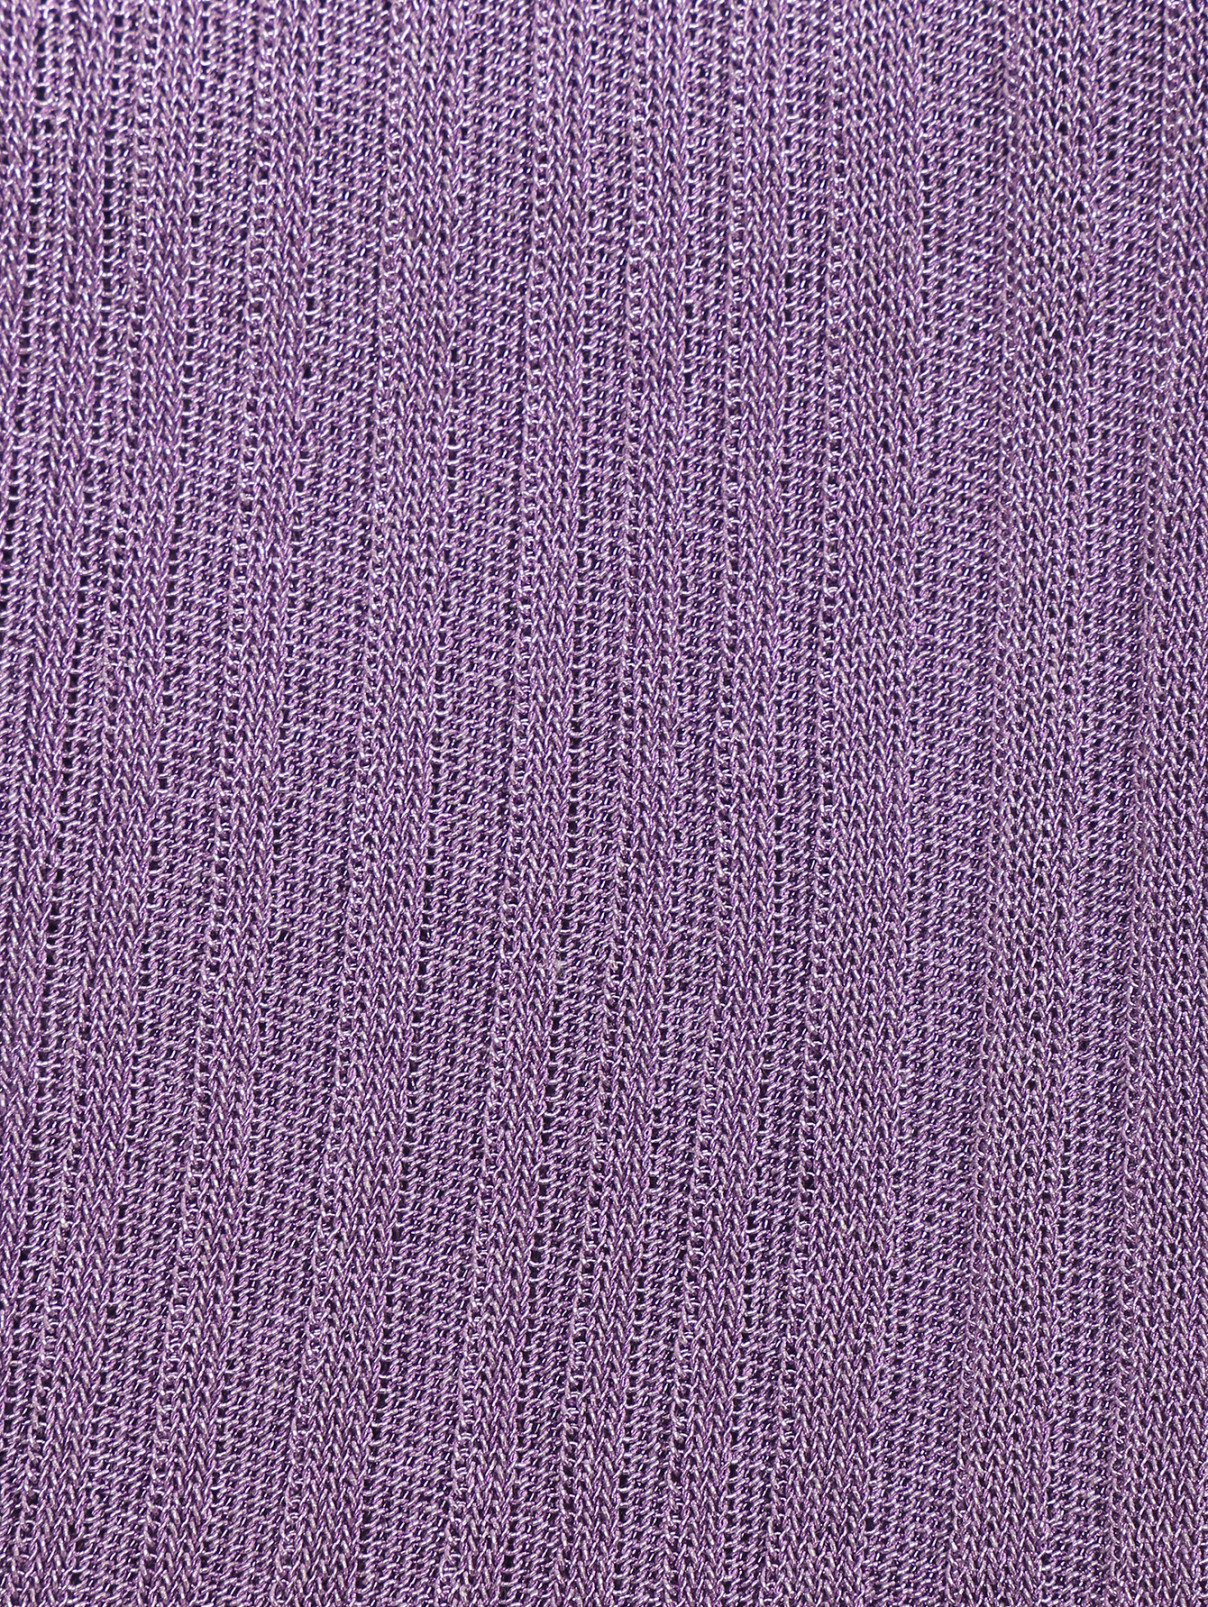 Юбка из смешанной вискозы на резинке Dorothee Schumacher  –  Деталь  – Цвет:  Фиолетовый